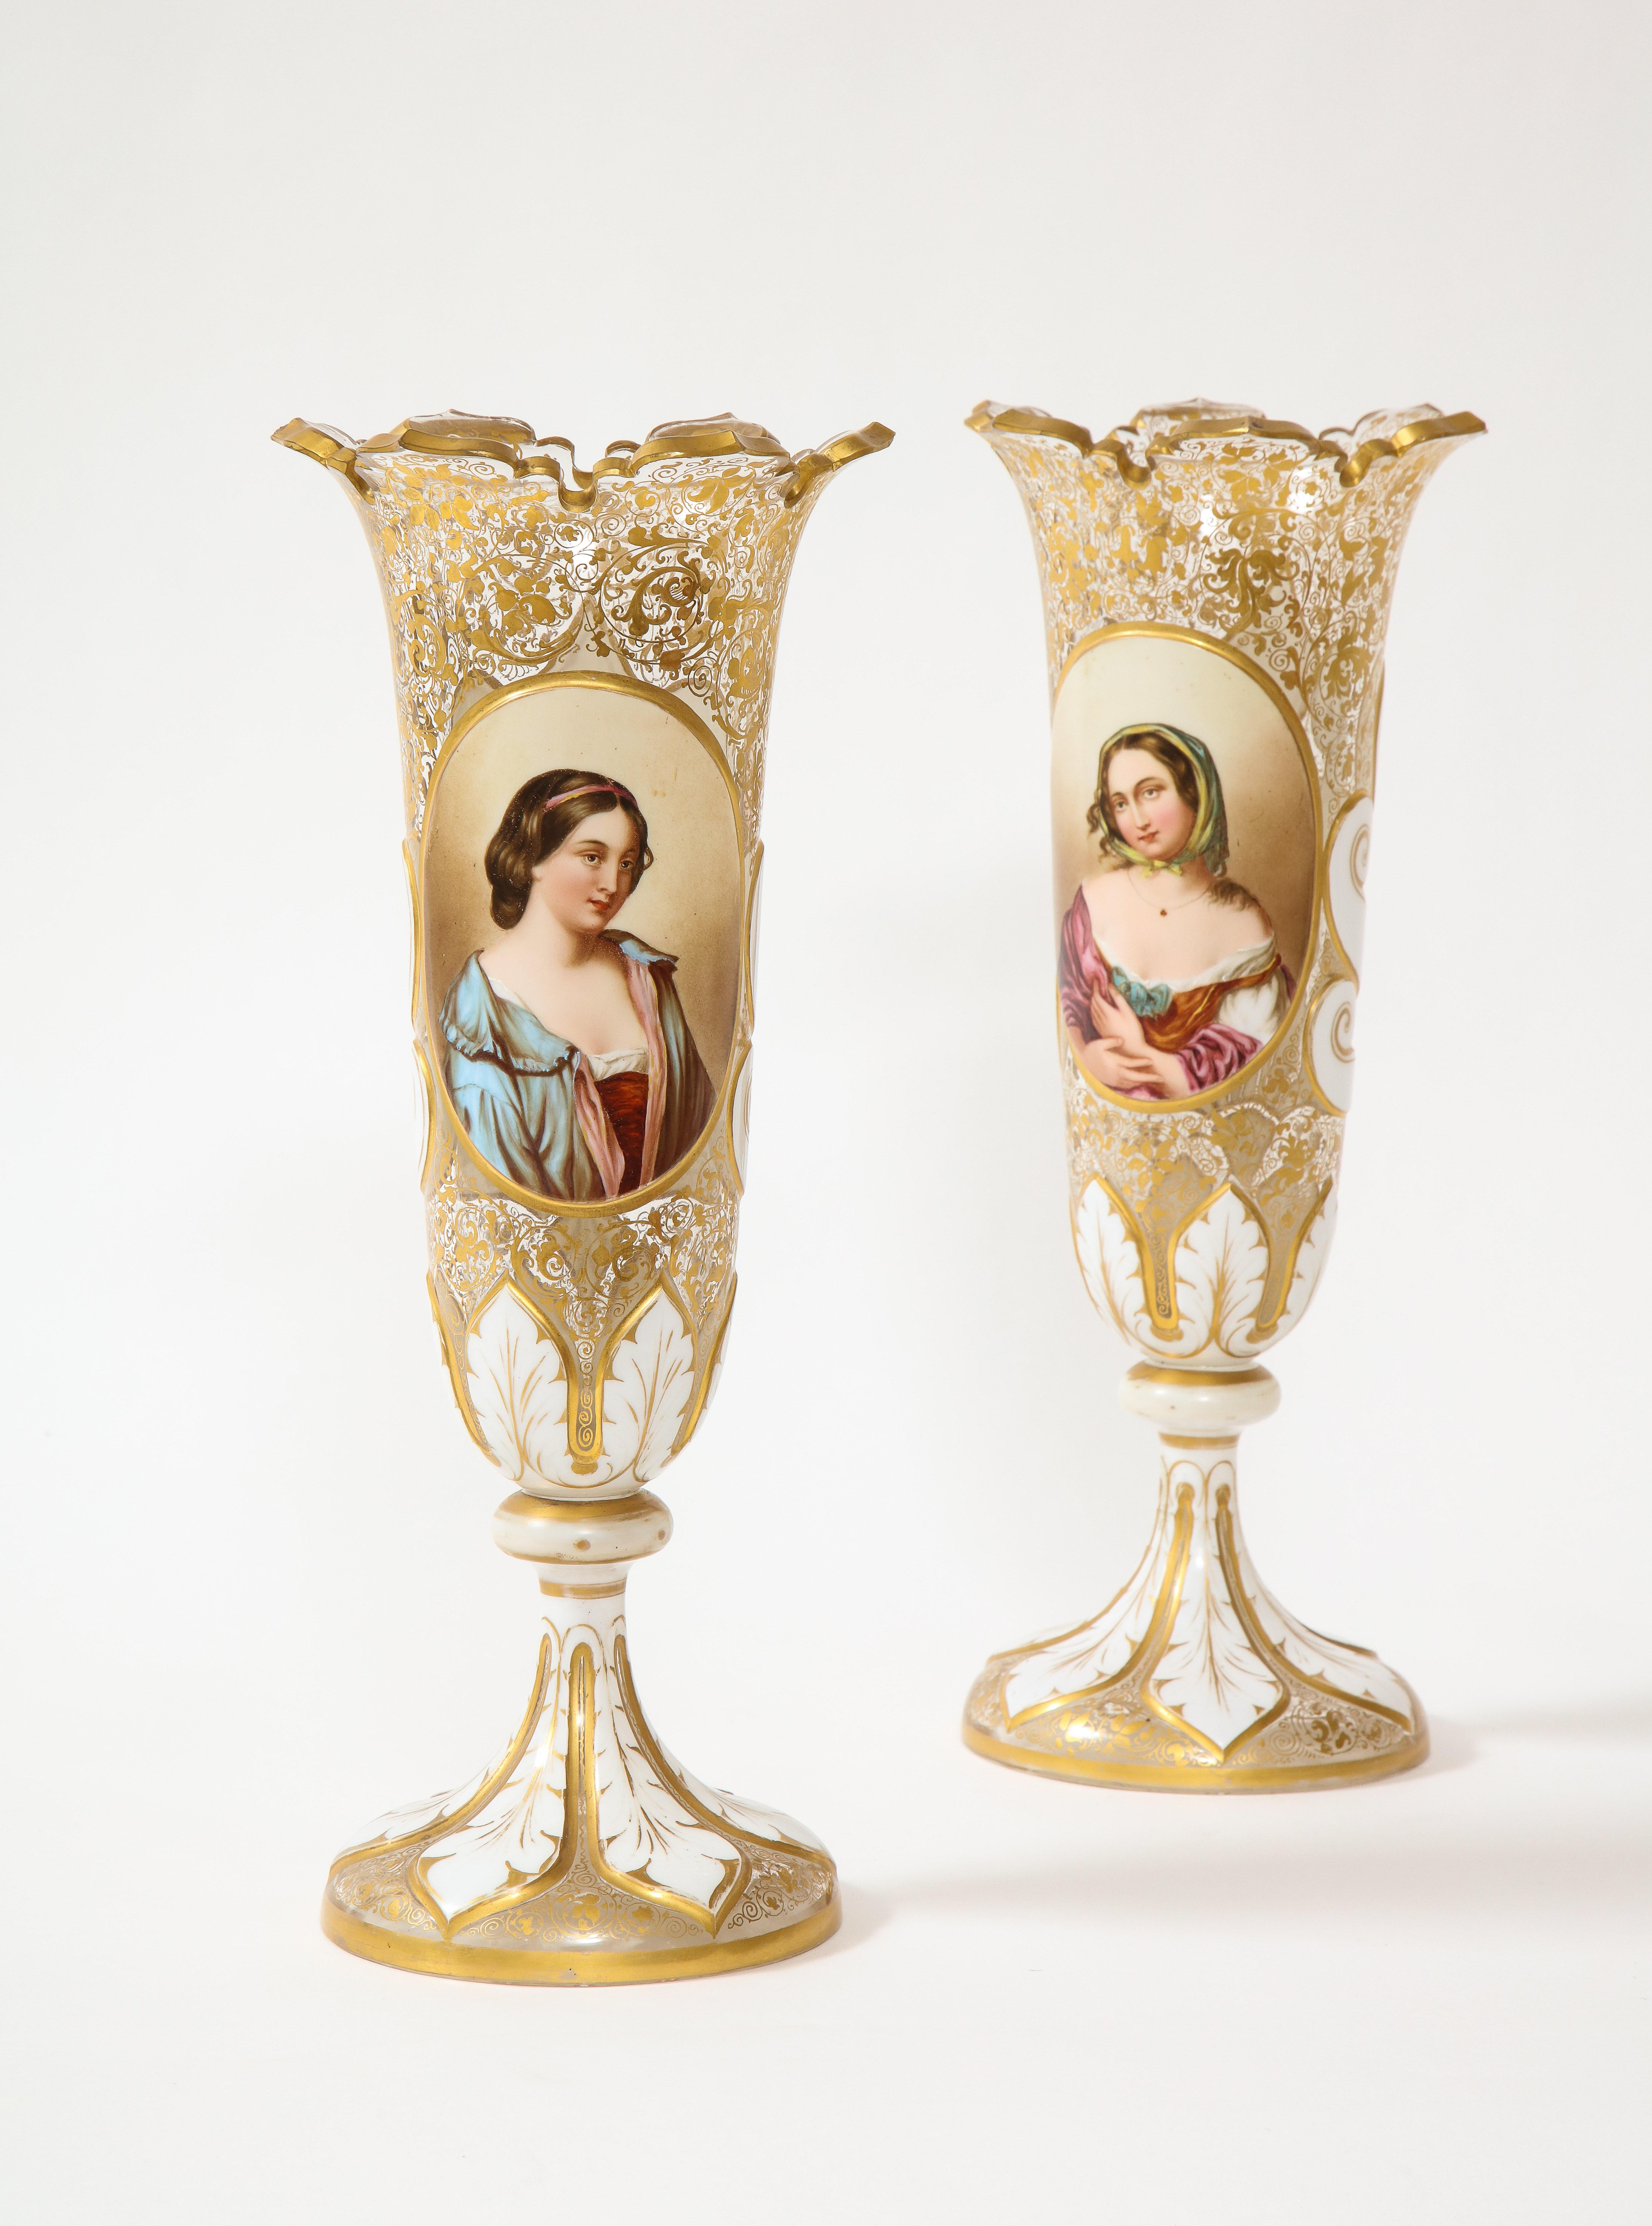 Tchèque Vases portraits de jeune fille en cristal blanc sur fond transparent de style bohème ancien, vers le XIXe siècle en vente